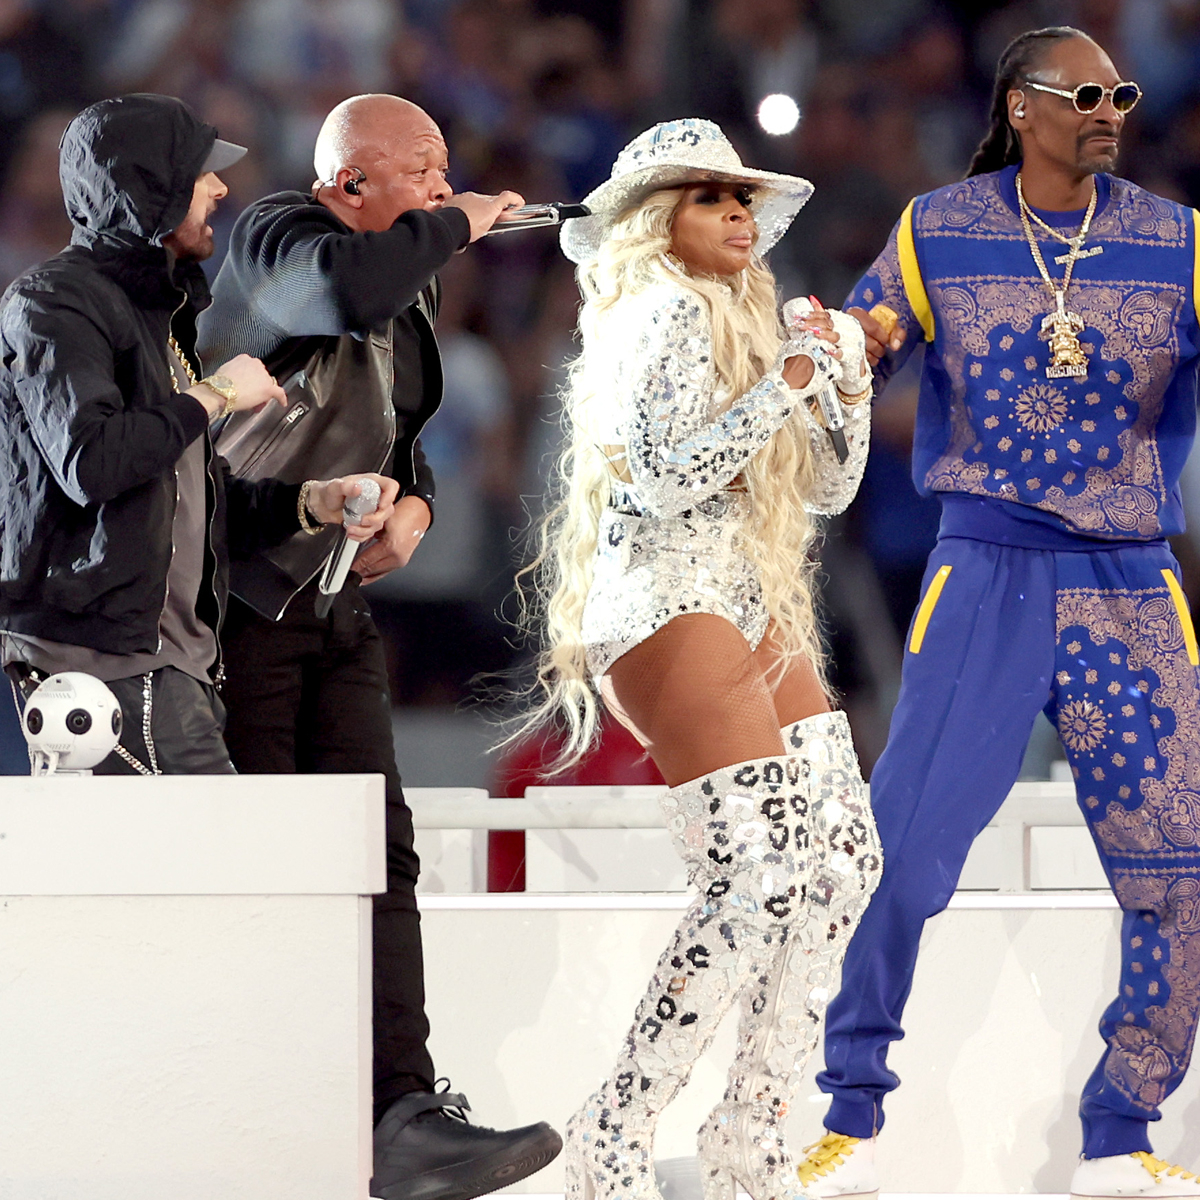 Super Bowl 2022 halftime show video, reaction, news, Dr Dre, Snoop Dogg,  Eminem, 50 Cent, Mary J. Blige